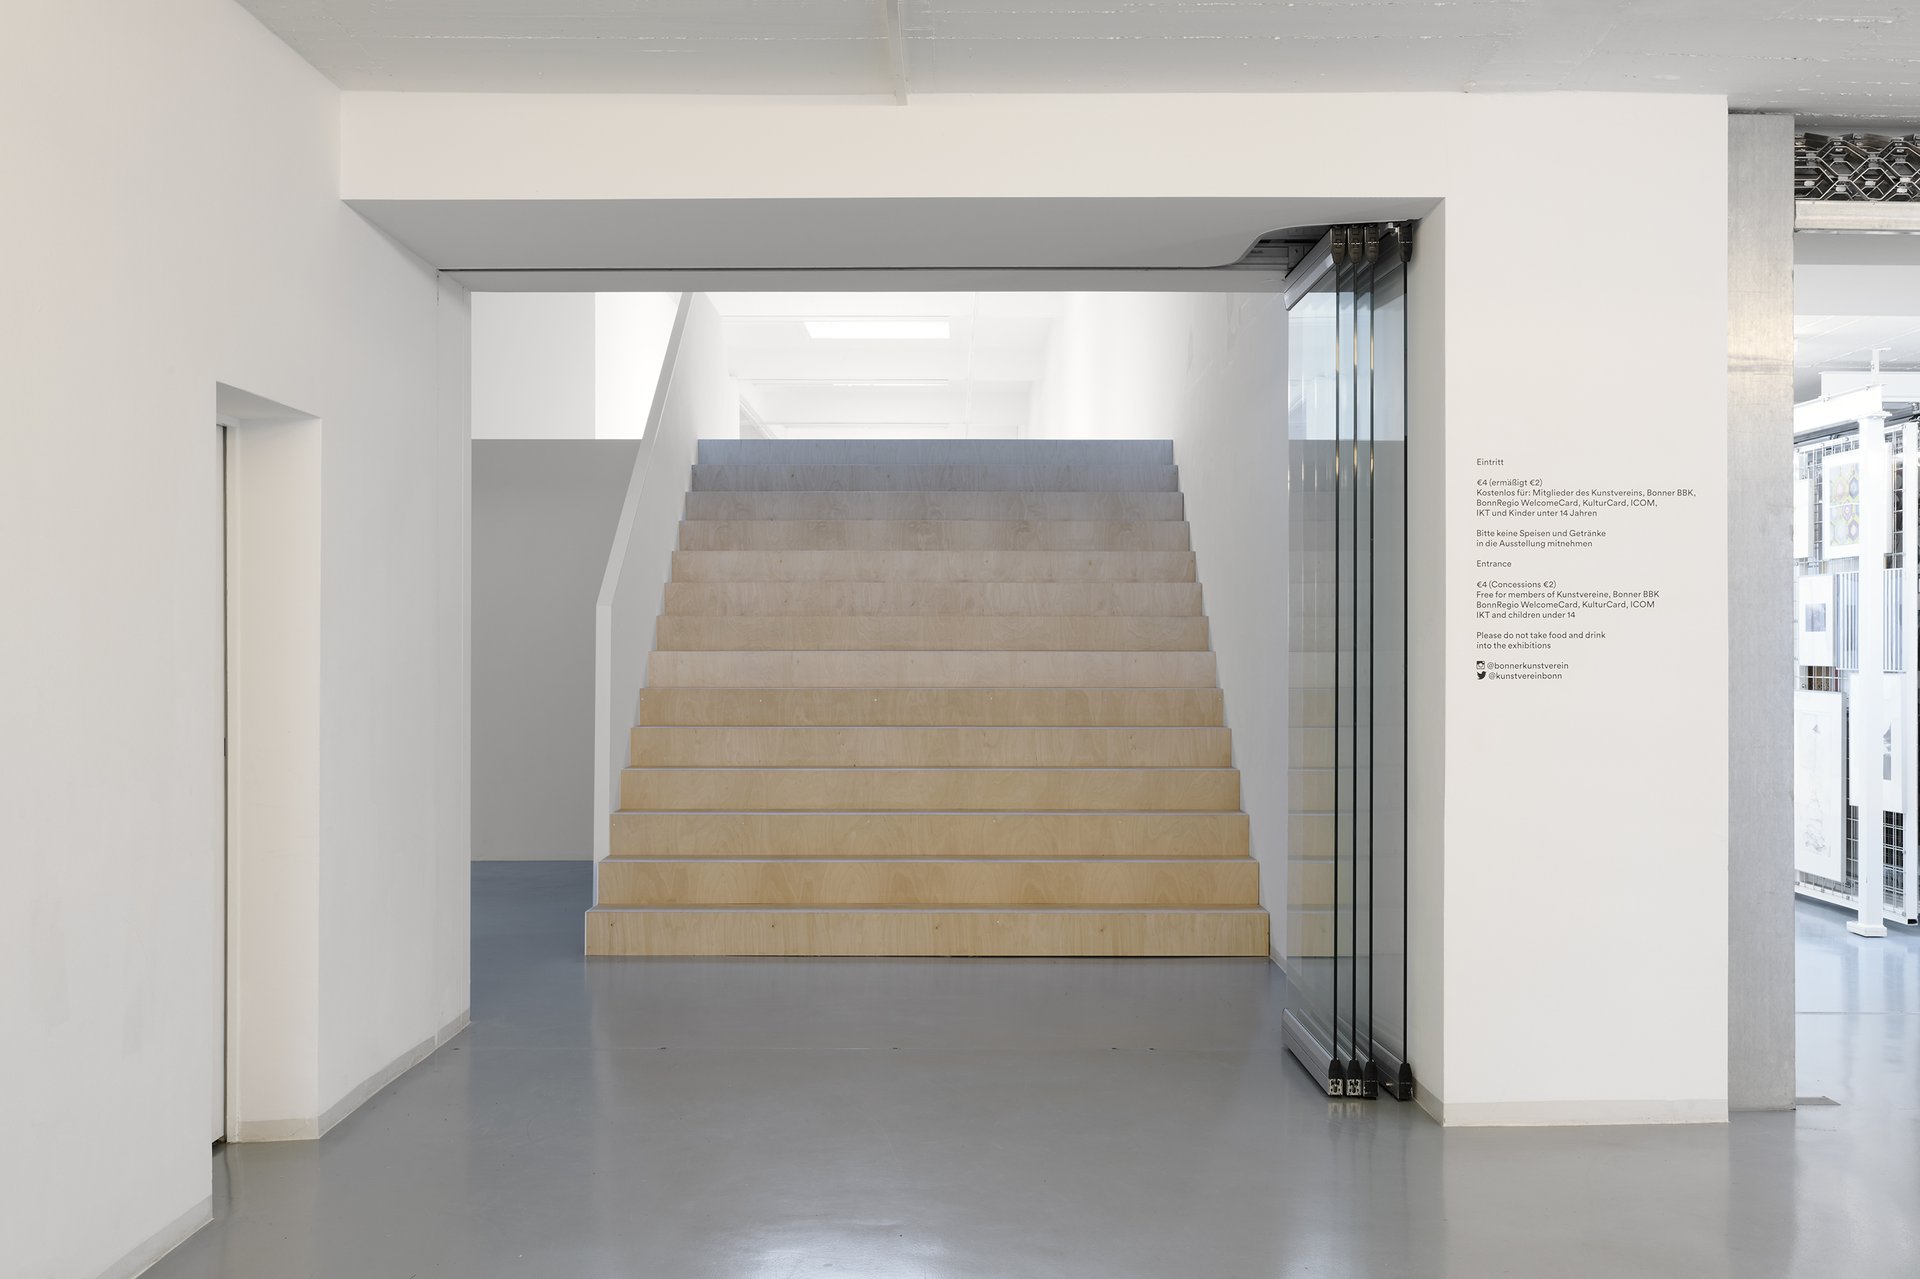 Michael Kleine, Treppe und Wand, 2021. Installation view: The Holding Environment, Bonner Kunstverein, 2021. Photo: Mareike Tocha. Courtesy the artist.